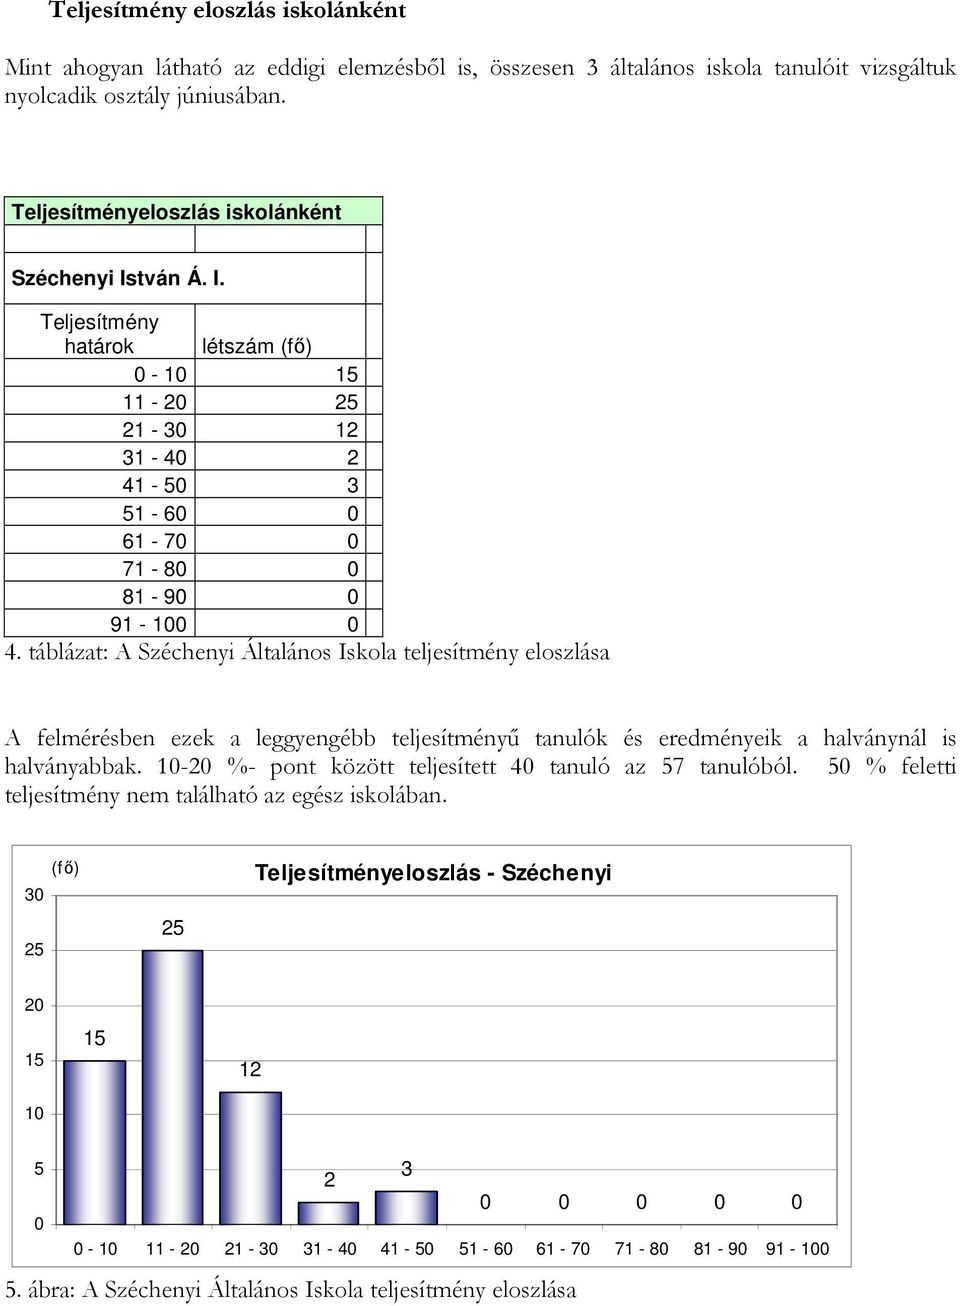 táblázat: A Széchenyi Általános Iskola teljesítmény eloszlása A felmérésben ezek a leggyengébb teljesítményő tanulók és eredményeik a halványnál is halványabbak.